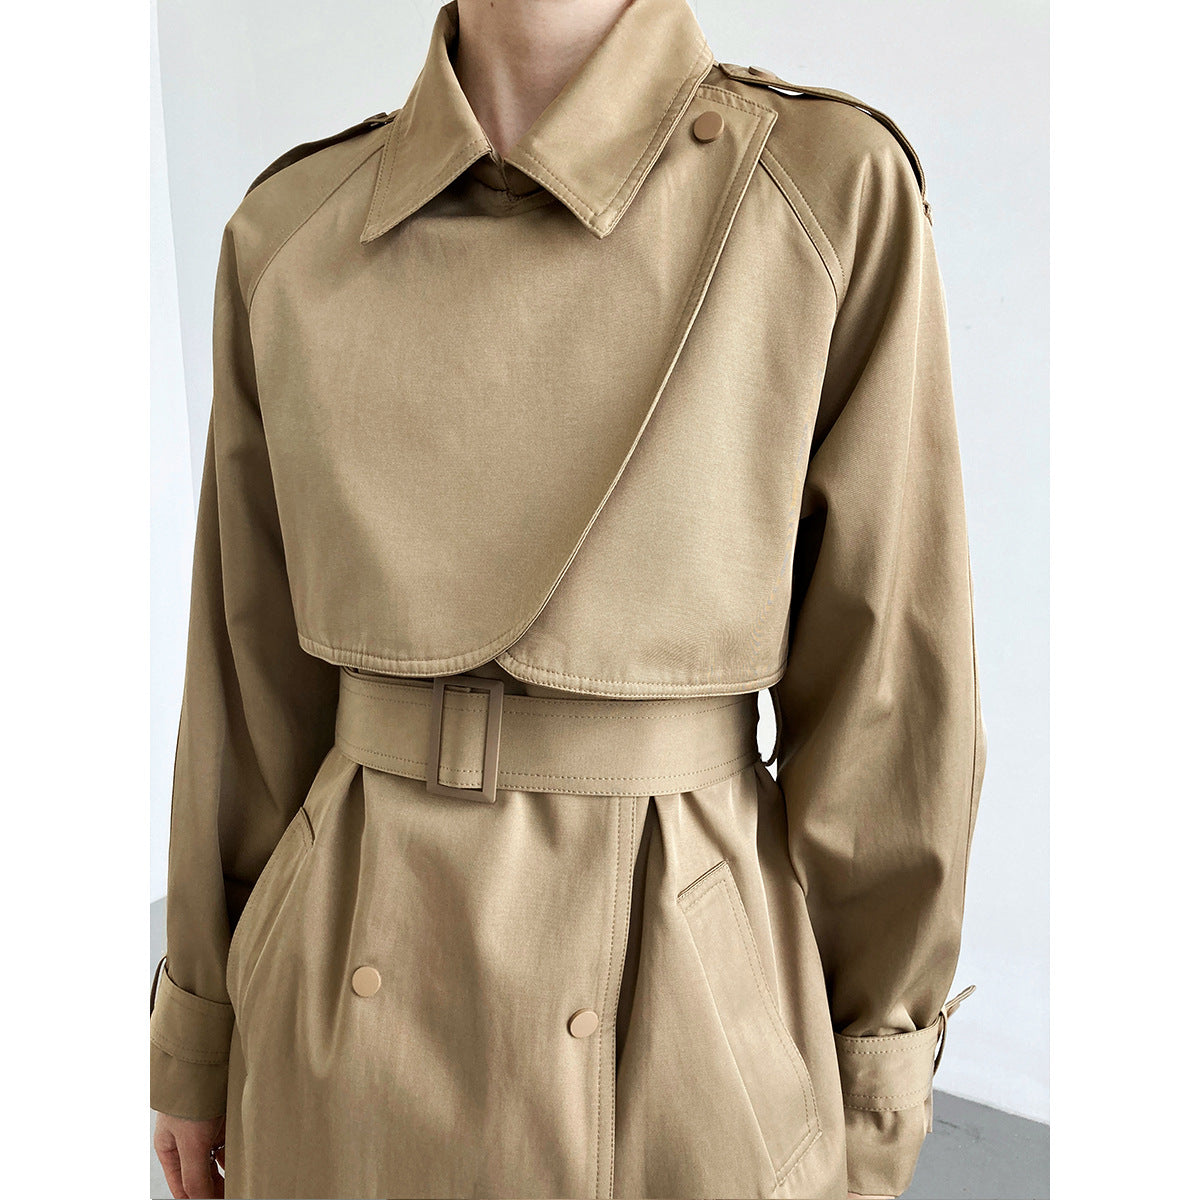 Mid length thin women's waist tight trench coat